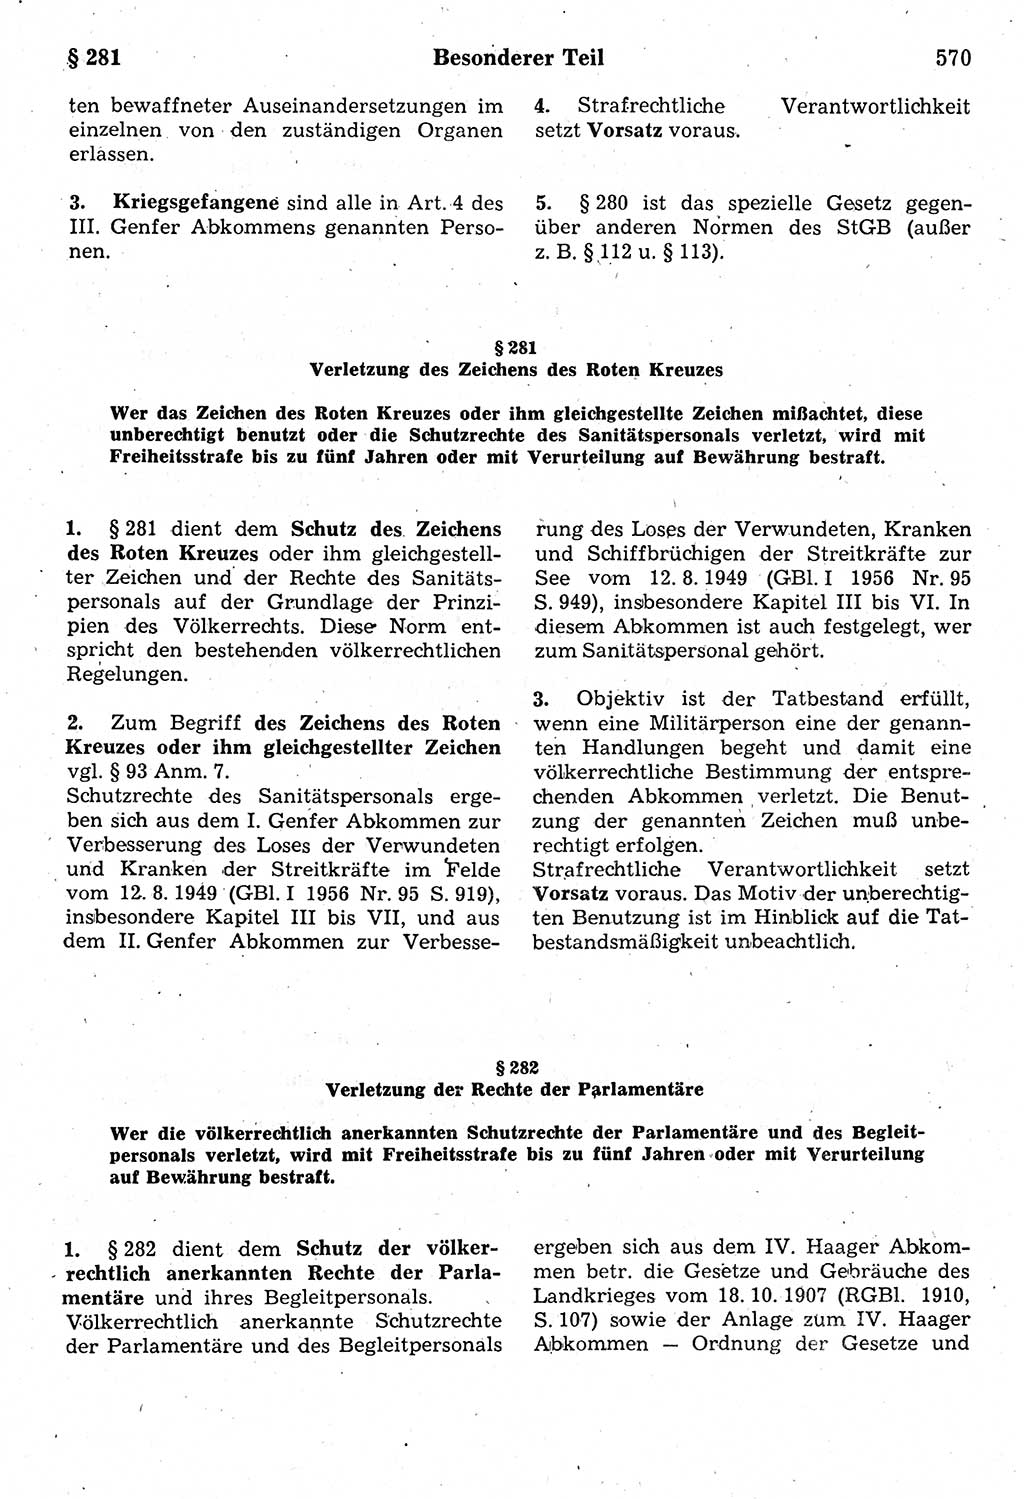 Strafrecht der Deutschen Demokratischen Republik (DDR), Kommentar zum Strafgesetzbuch (StGB) 1987, Seite 570 (Strafr. DDR Komm. StGB 1987, S. 570)